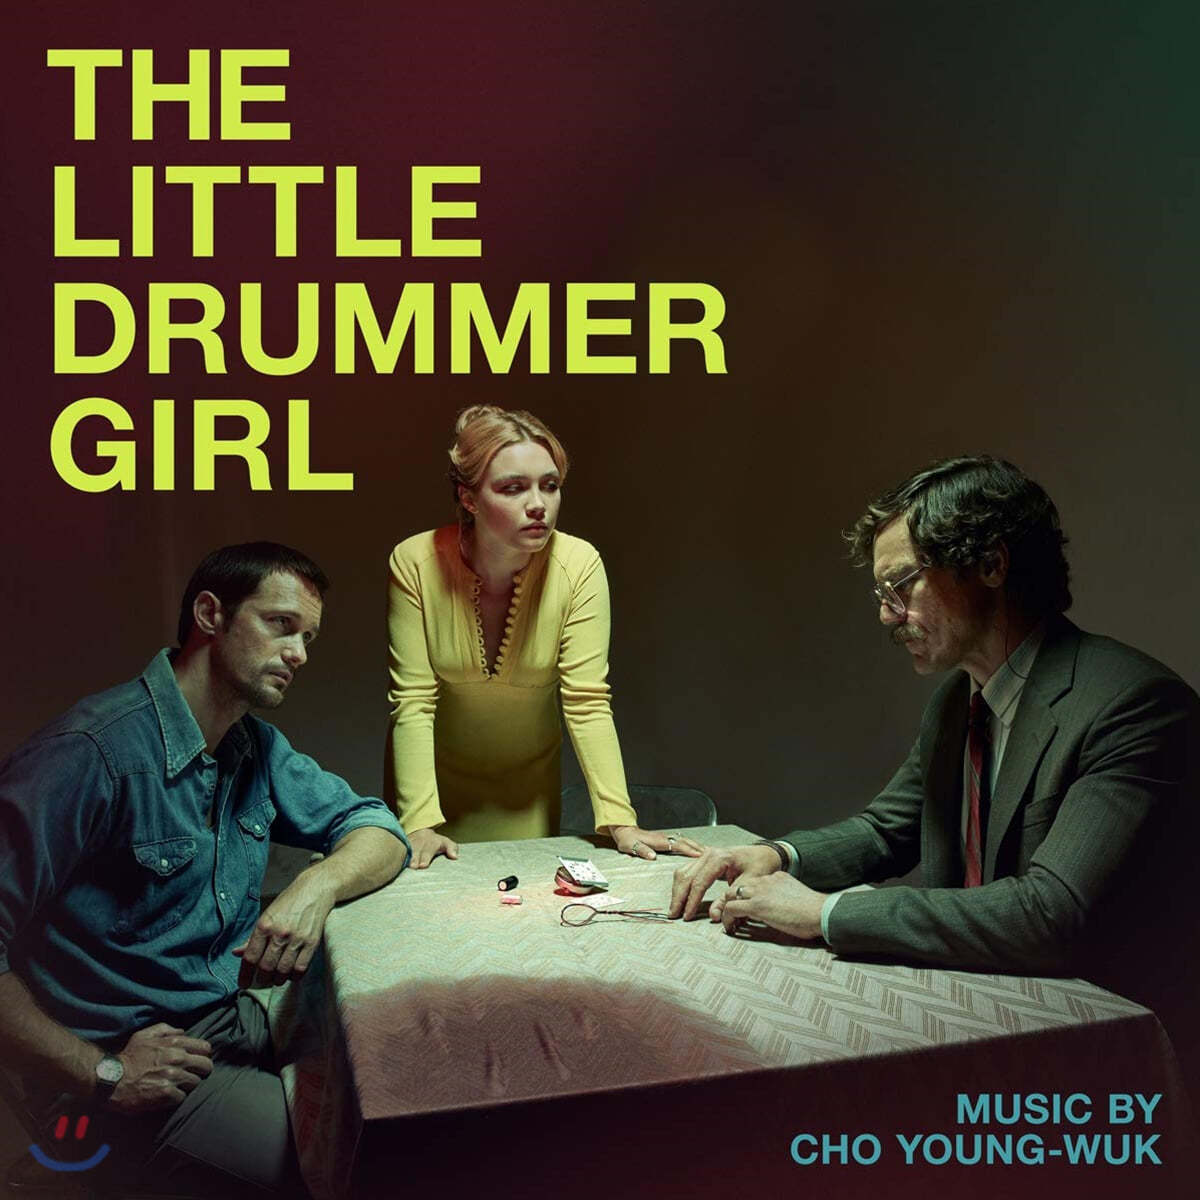 BBC 드라마 '리틀 드러머 걸' 드라마 음악 (The Little Drummer Girl OST by Cho Young-Wuk 조영욱) 